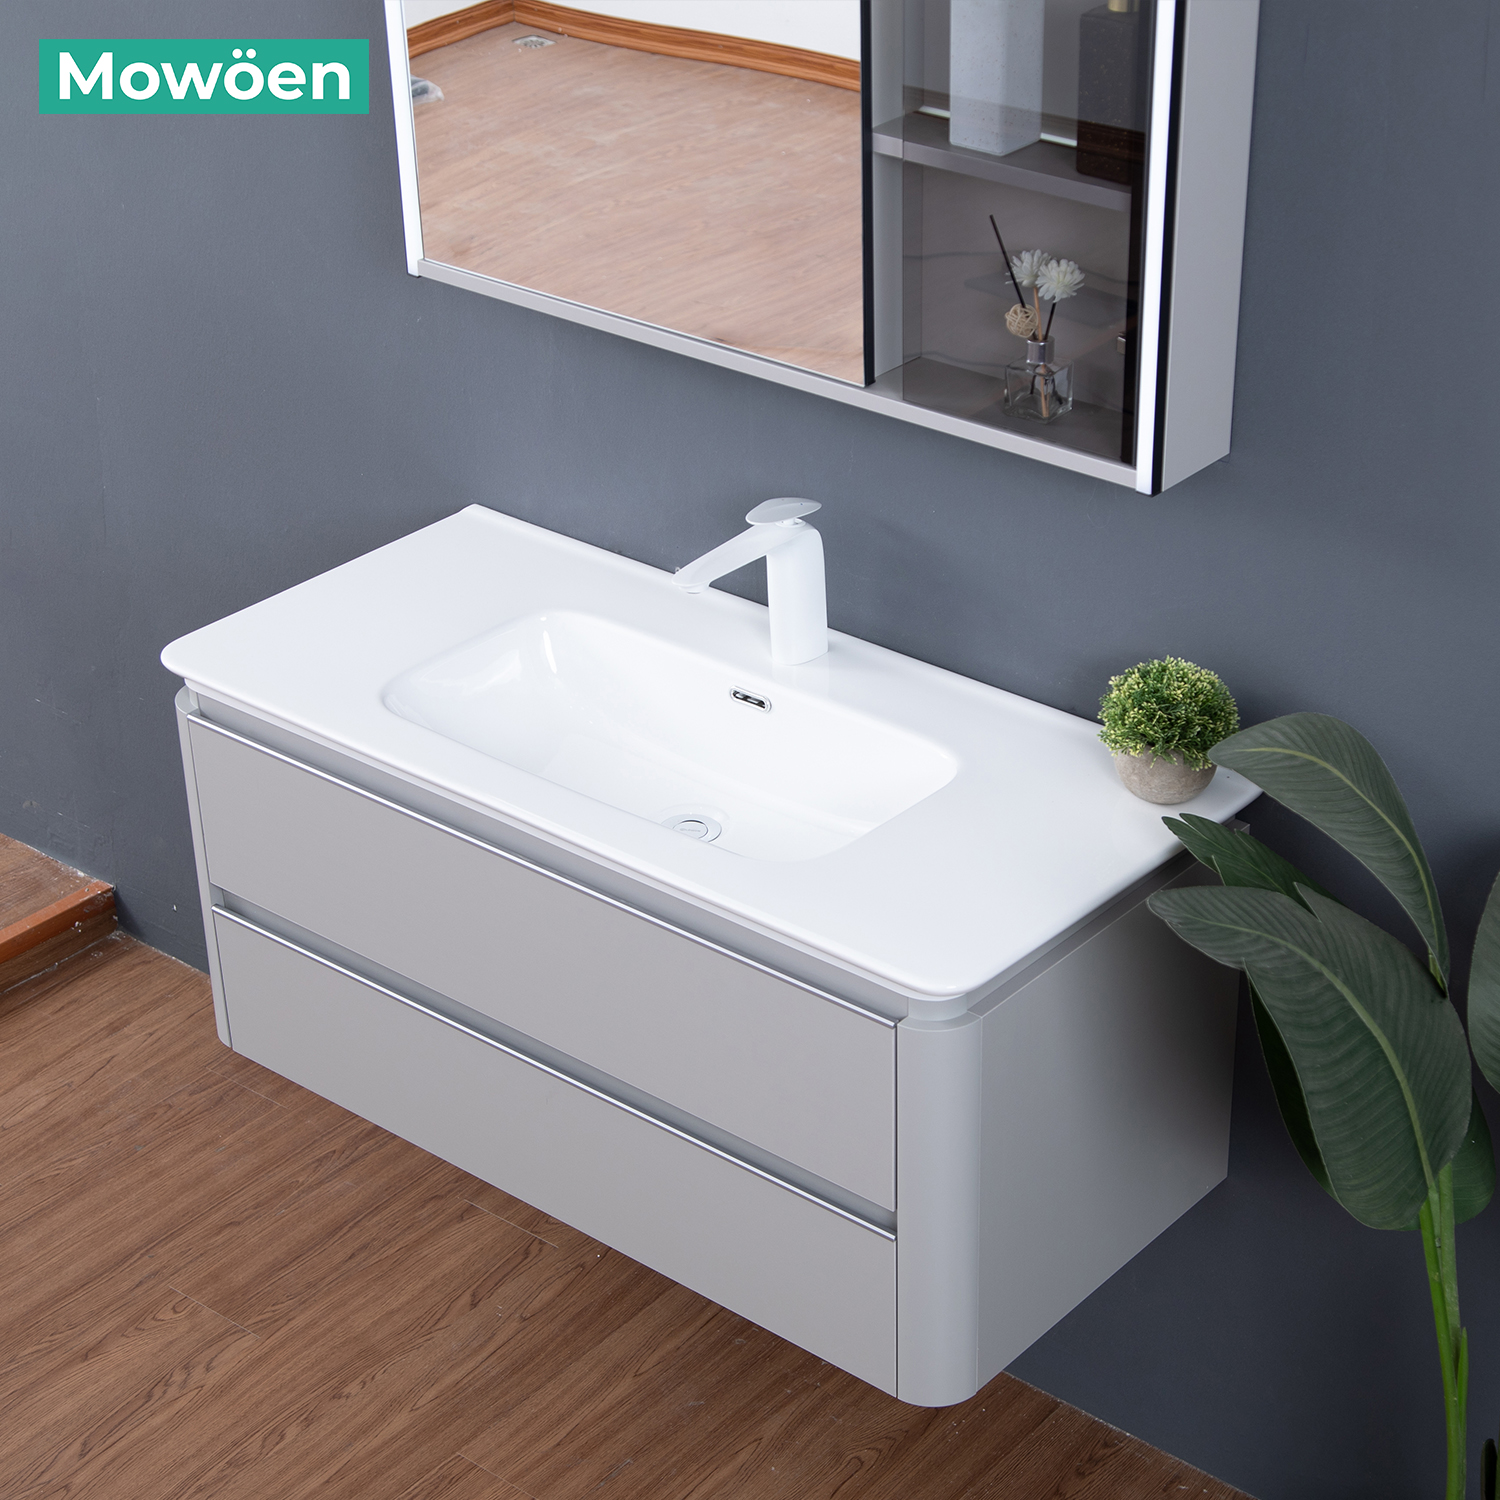 Tủ Lavabo Mowoen MW6632 – 100 chất liệu Plywood treo tường phòng tắm